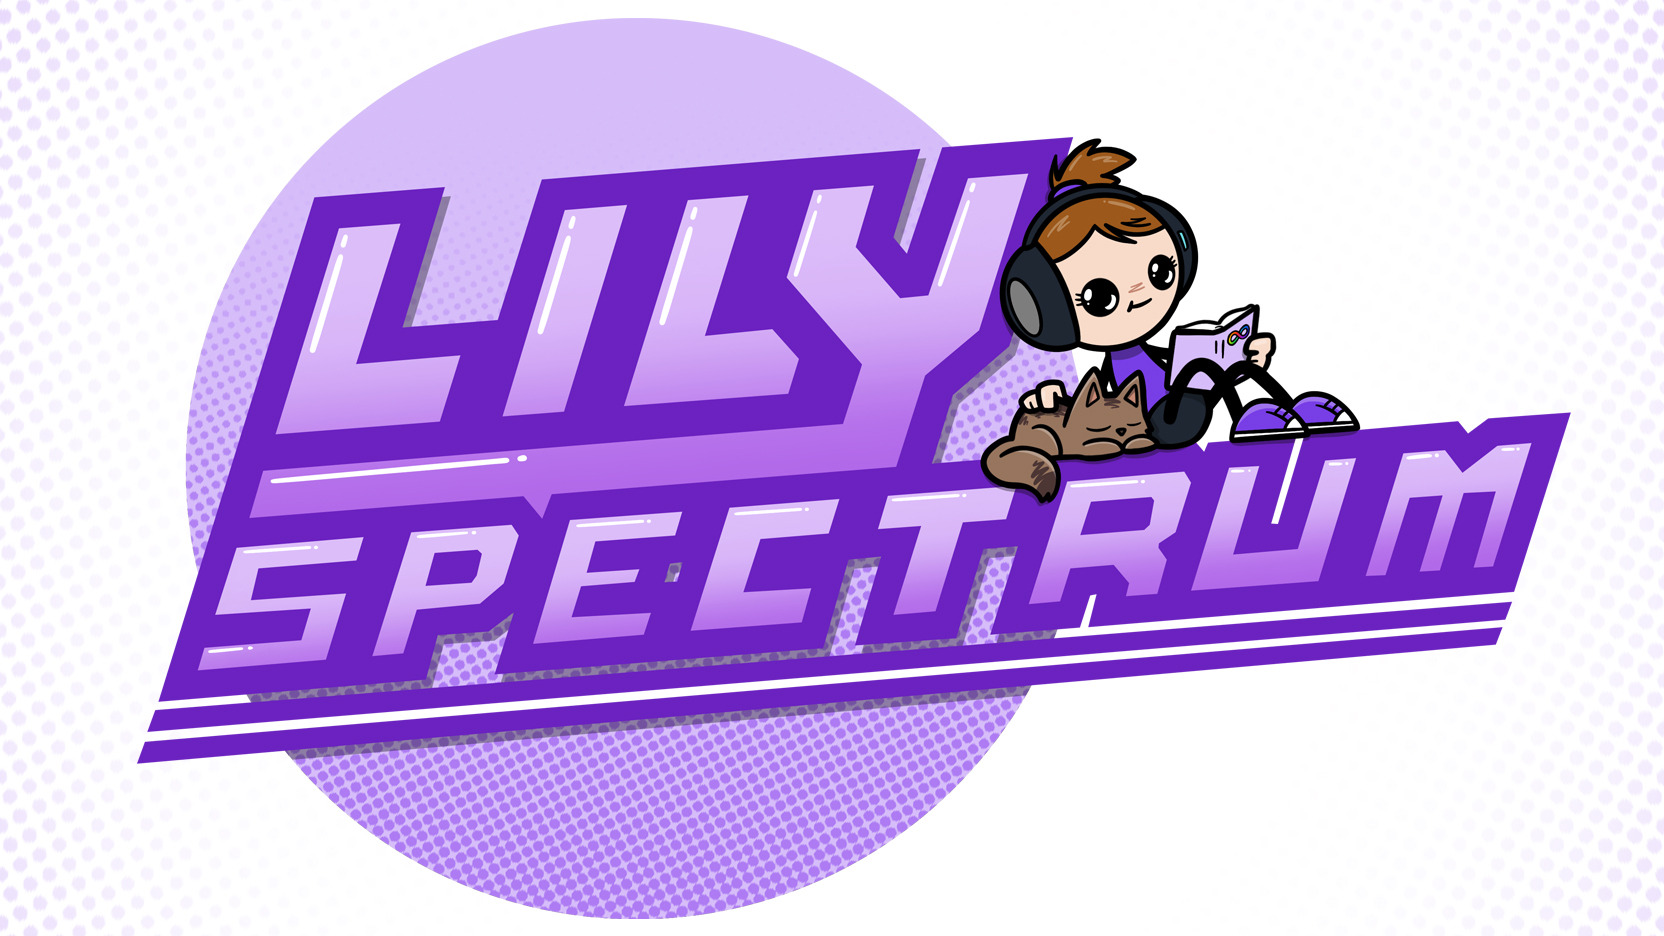 Lily Spectrum - was Aspigurl